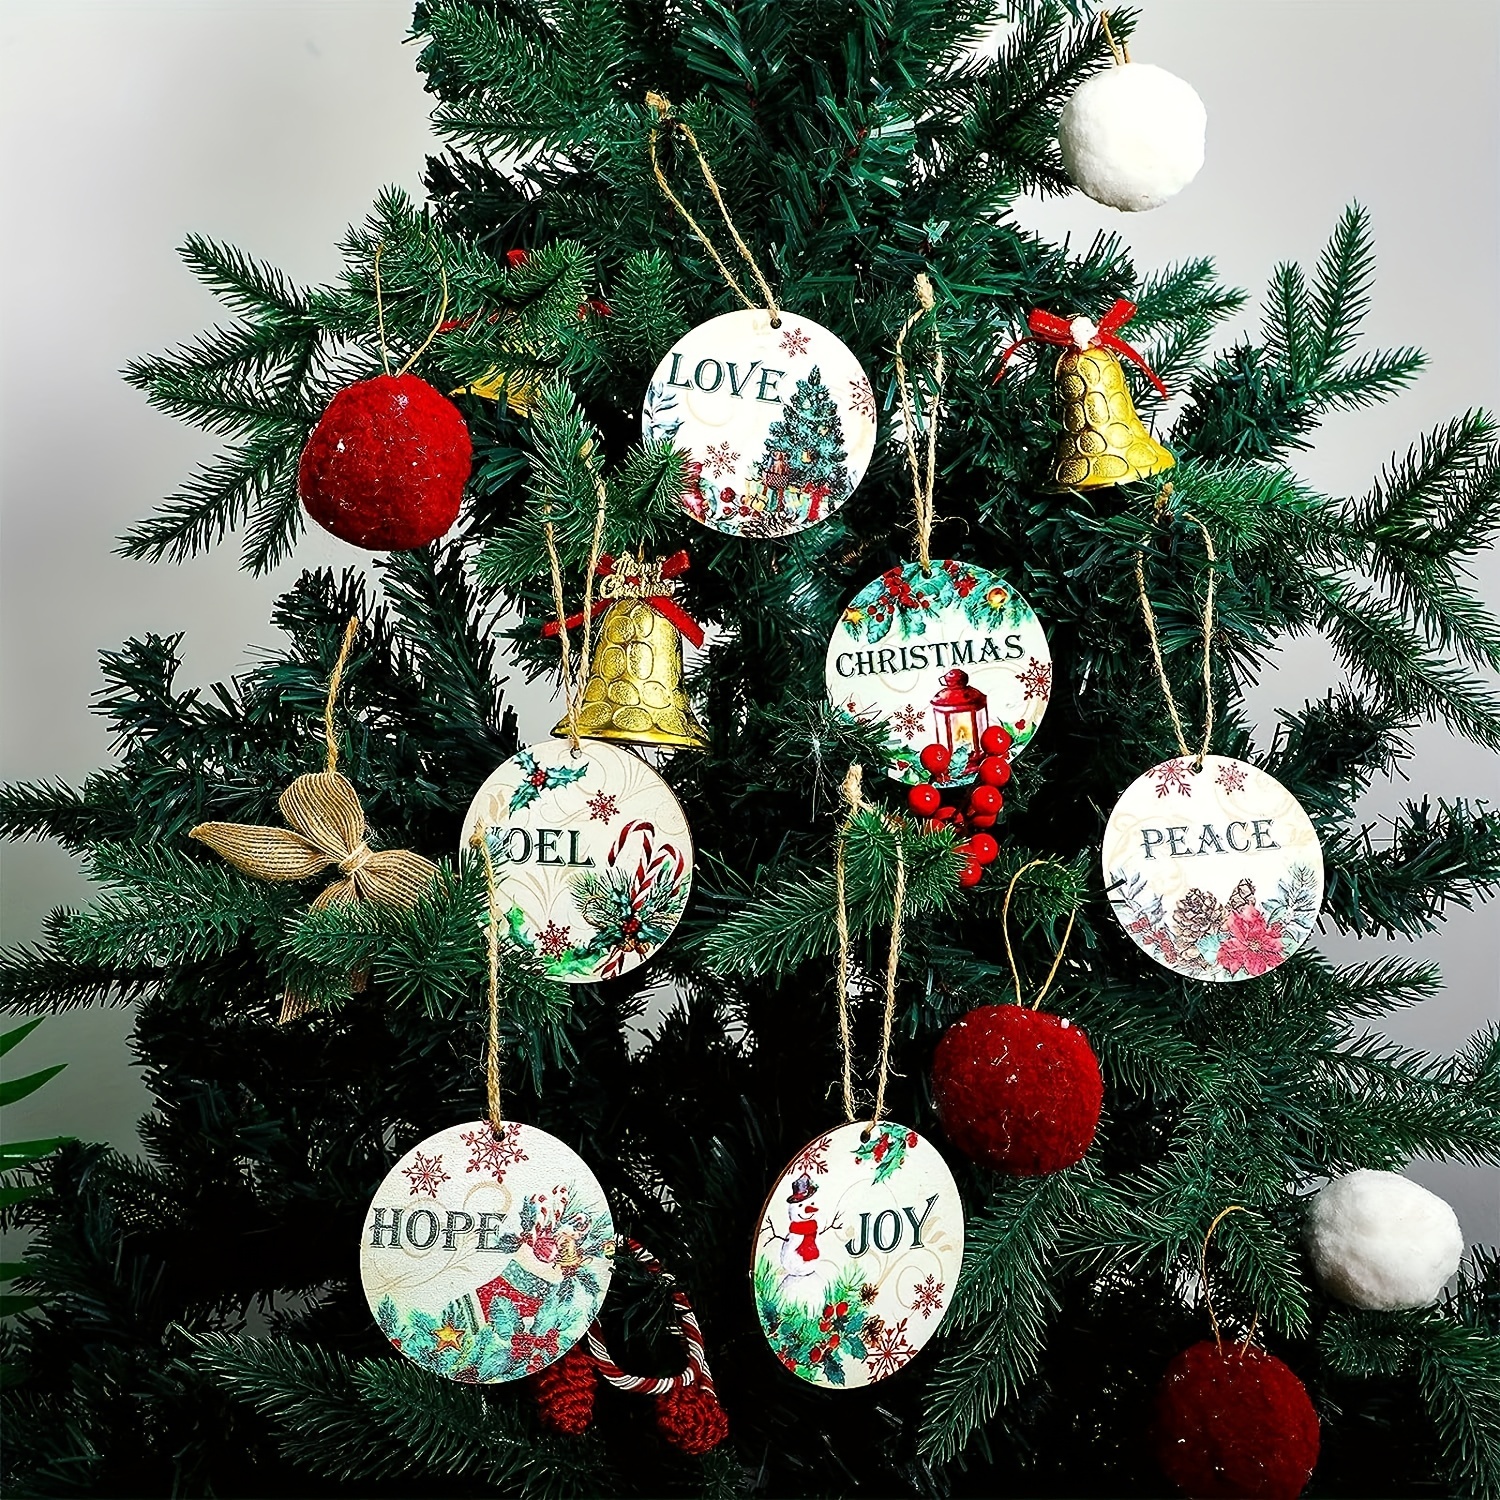 Enfeites de Natal, guitarra em fogo e água design espirrando chama  ornamentos festivos de Natal, decorações ideais para árvore, caixa de  presente, festa, varandas, 10 peças - 9,5 x 7,5 cm